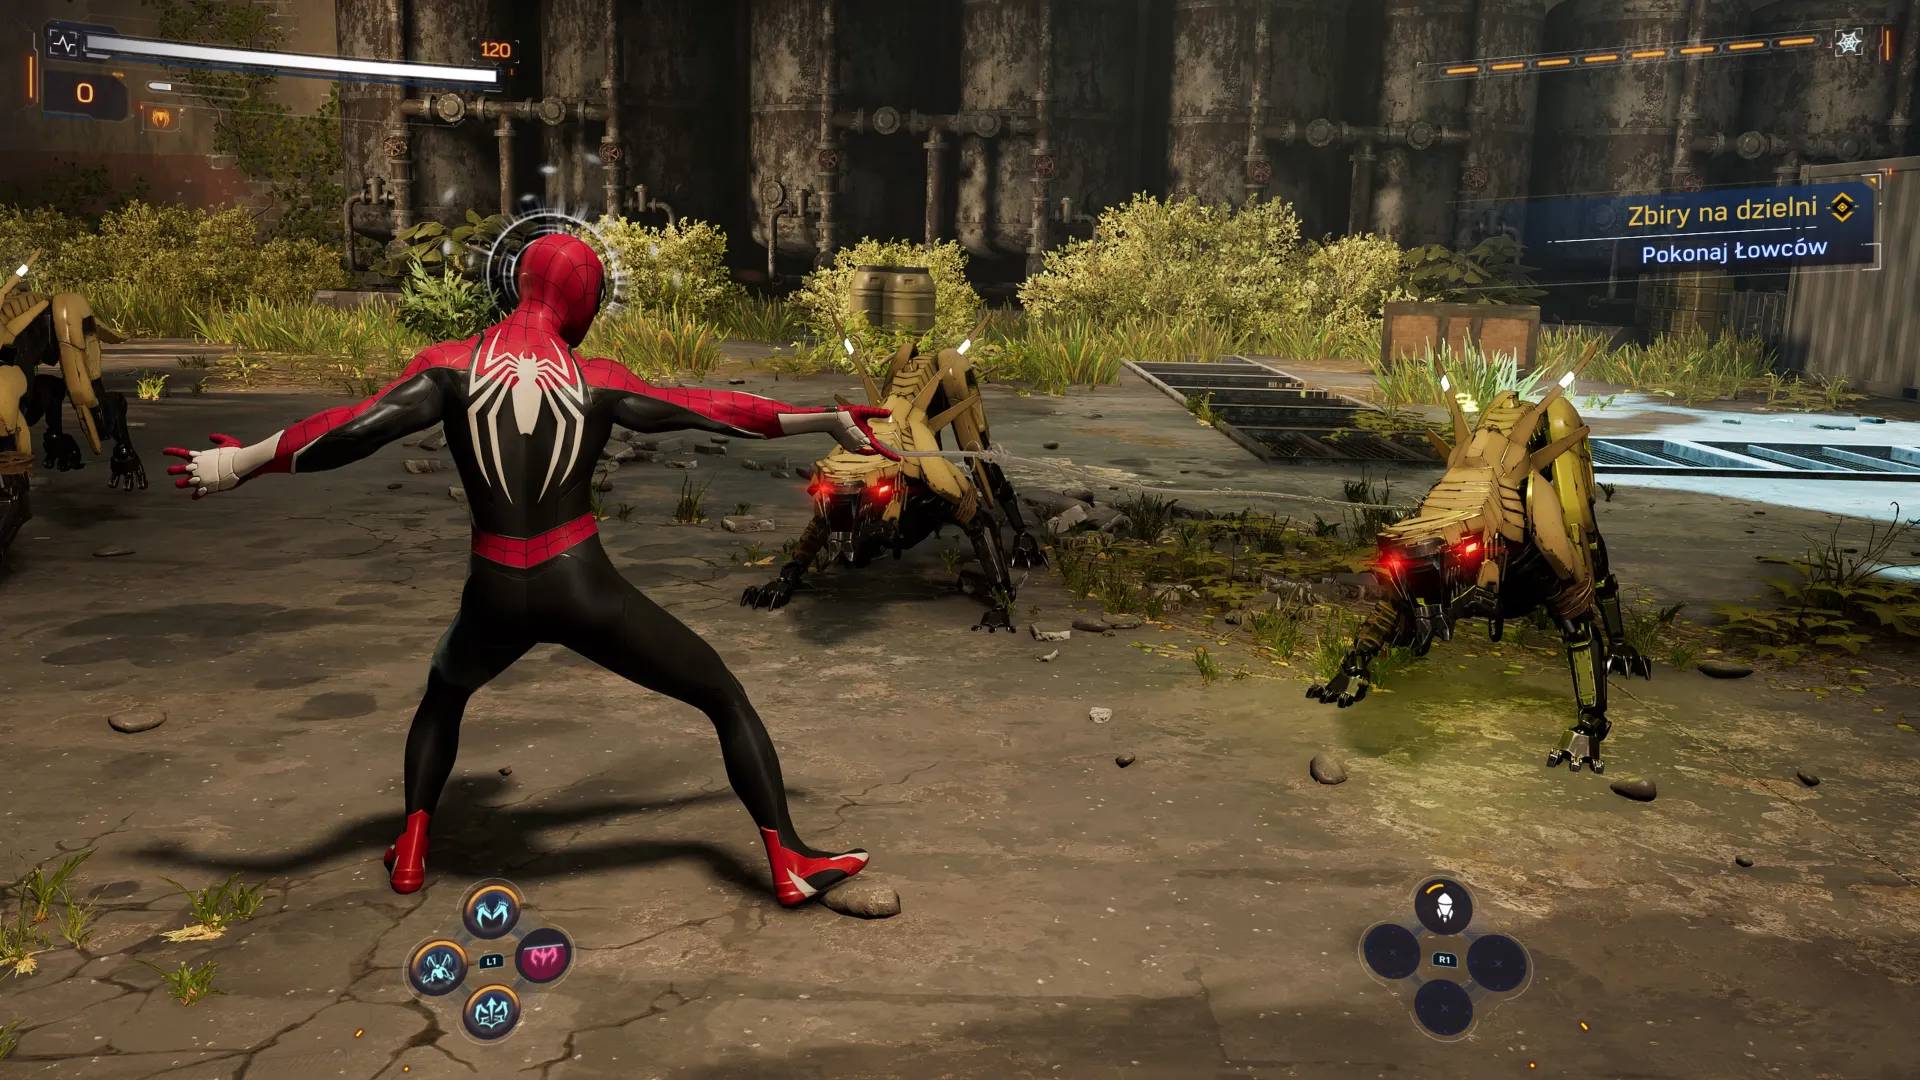 Walka z Spider-Man 2 daje dużo radości